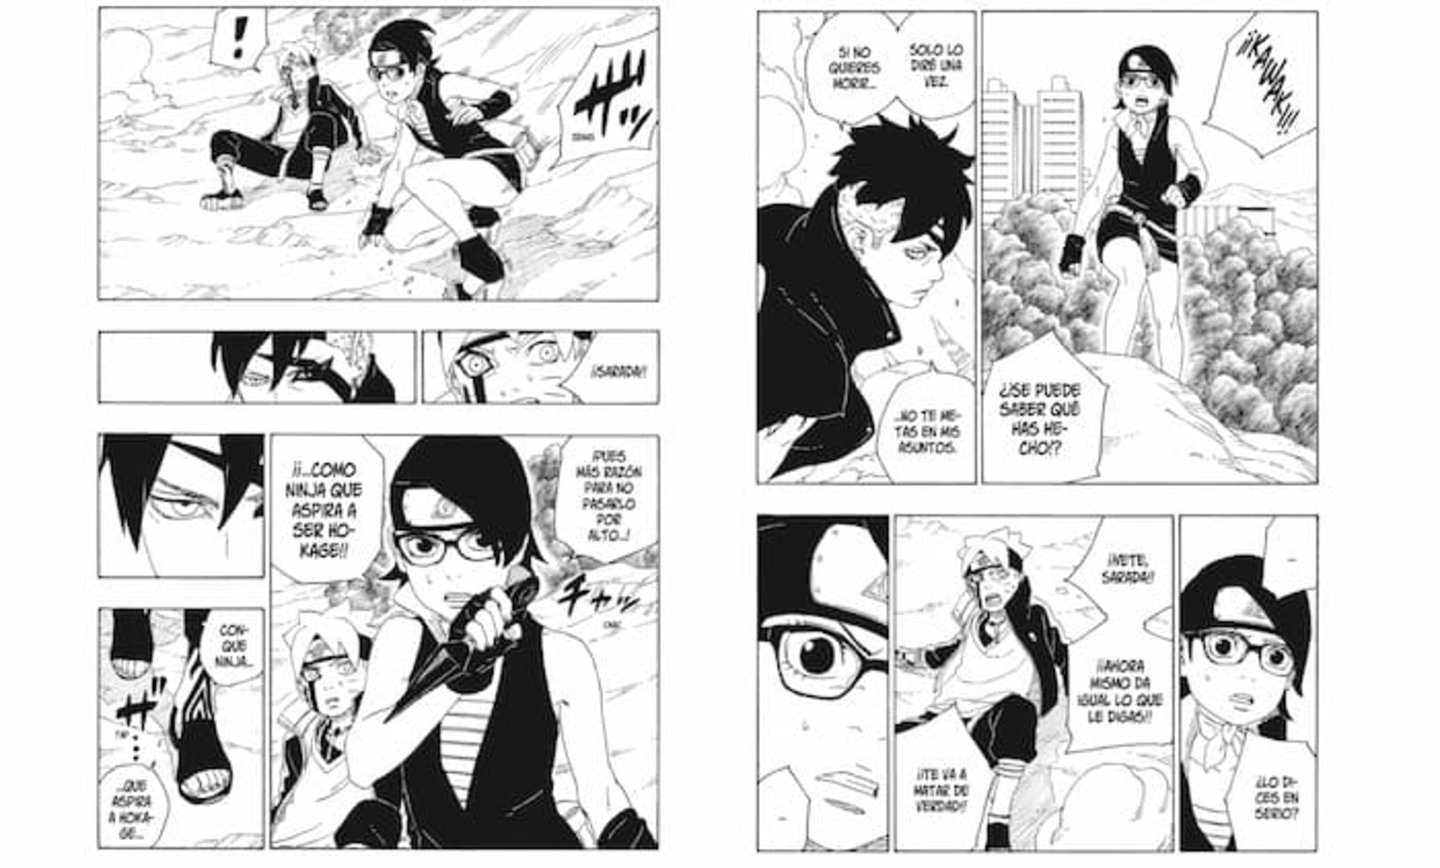 El capítulo más reciente del manga le ha otorgado nuevamente a Sarada la relevancia que tanto ameritaba este personaje tan interesante